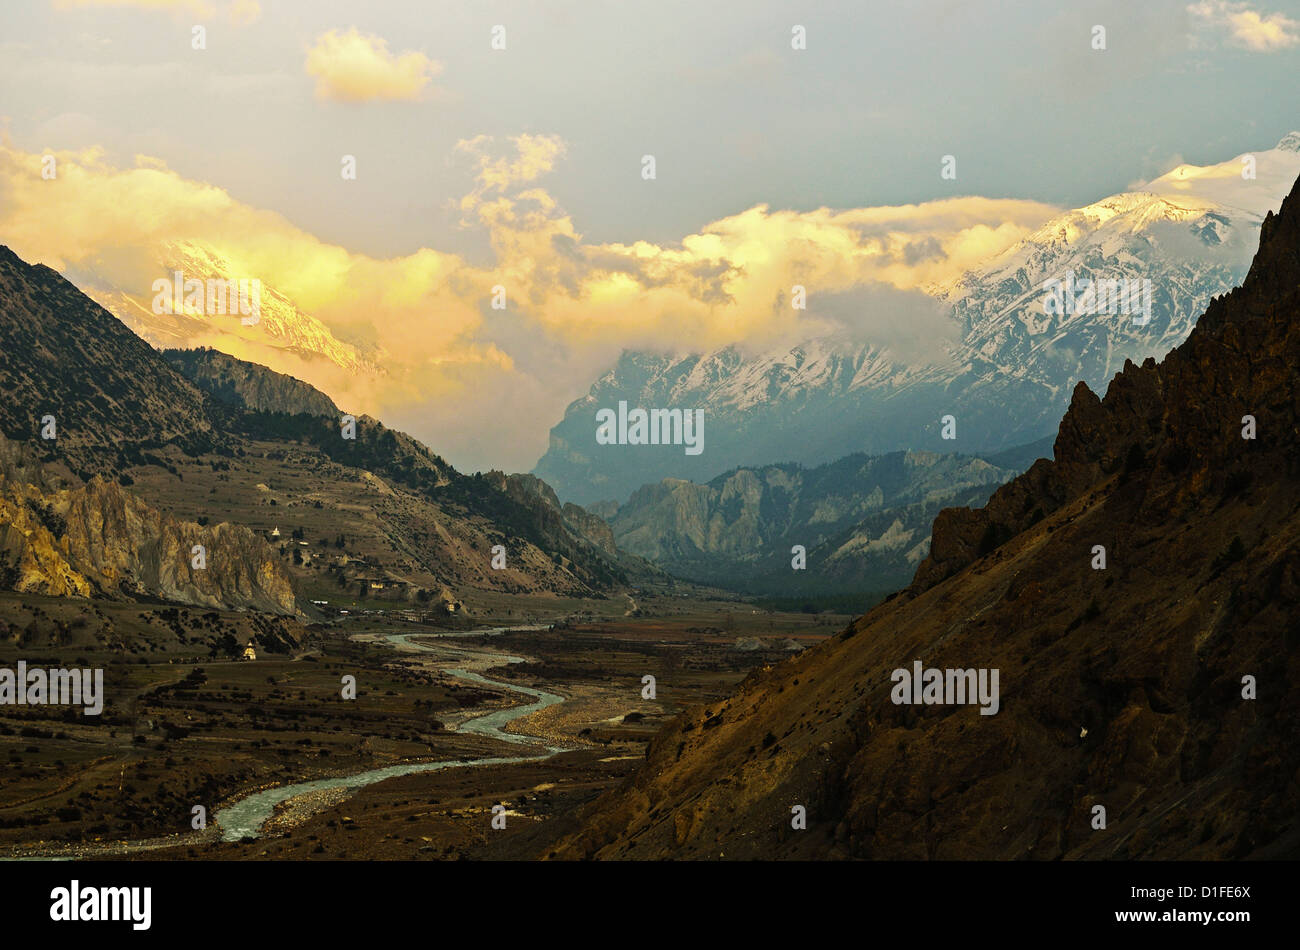 Marsyangdi River Valley et de l'Annapurna de l'Himalaya, de l'Annapurna Conservation Area, Gandaki, Région de l'Ouest, le Népal Banque D'Images